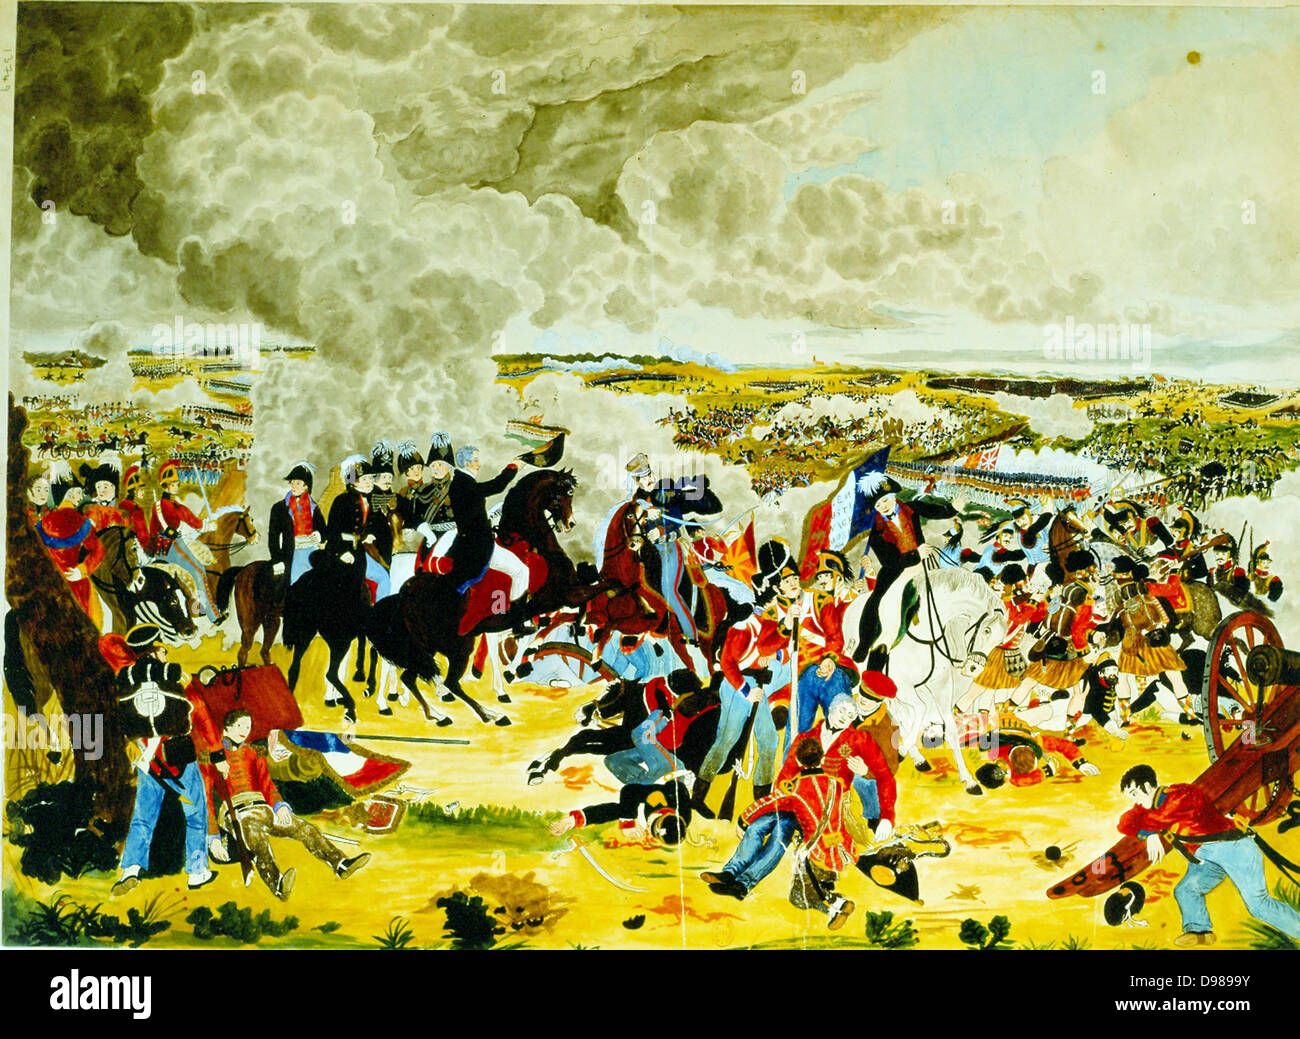 Bataille de Waterloo, le 18 juin 1815. Wellington avec son personnel cylindres inf rieurs son chapeau (à Blucher). Cette bataille a mis fin aux guerres napoléoniennes. Aquarelle par John Atkinson. Banque D'Images